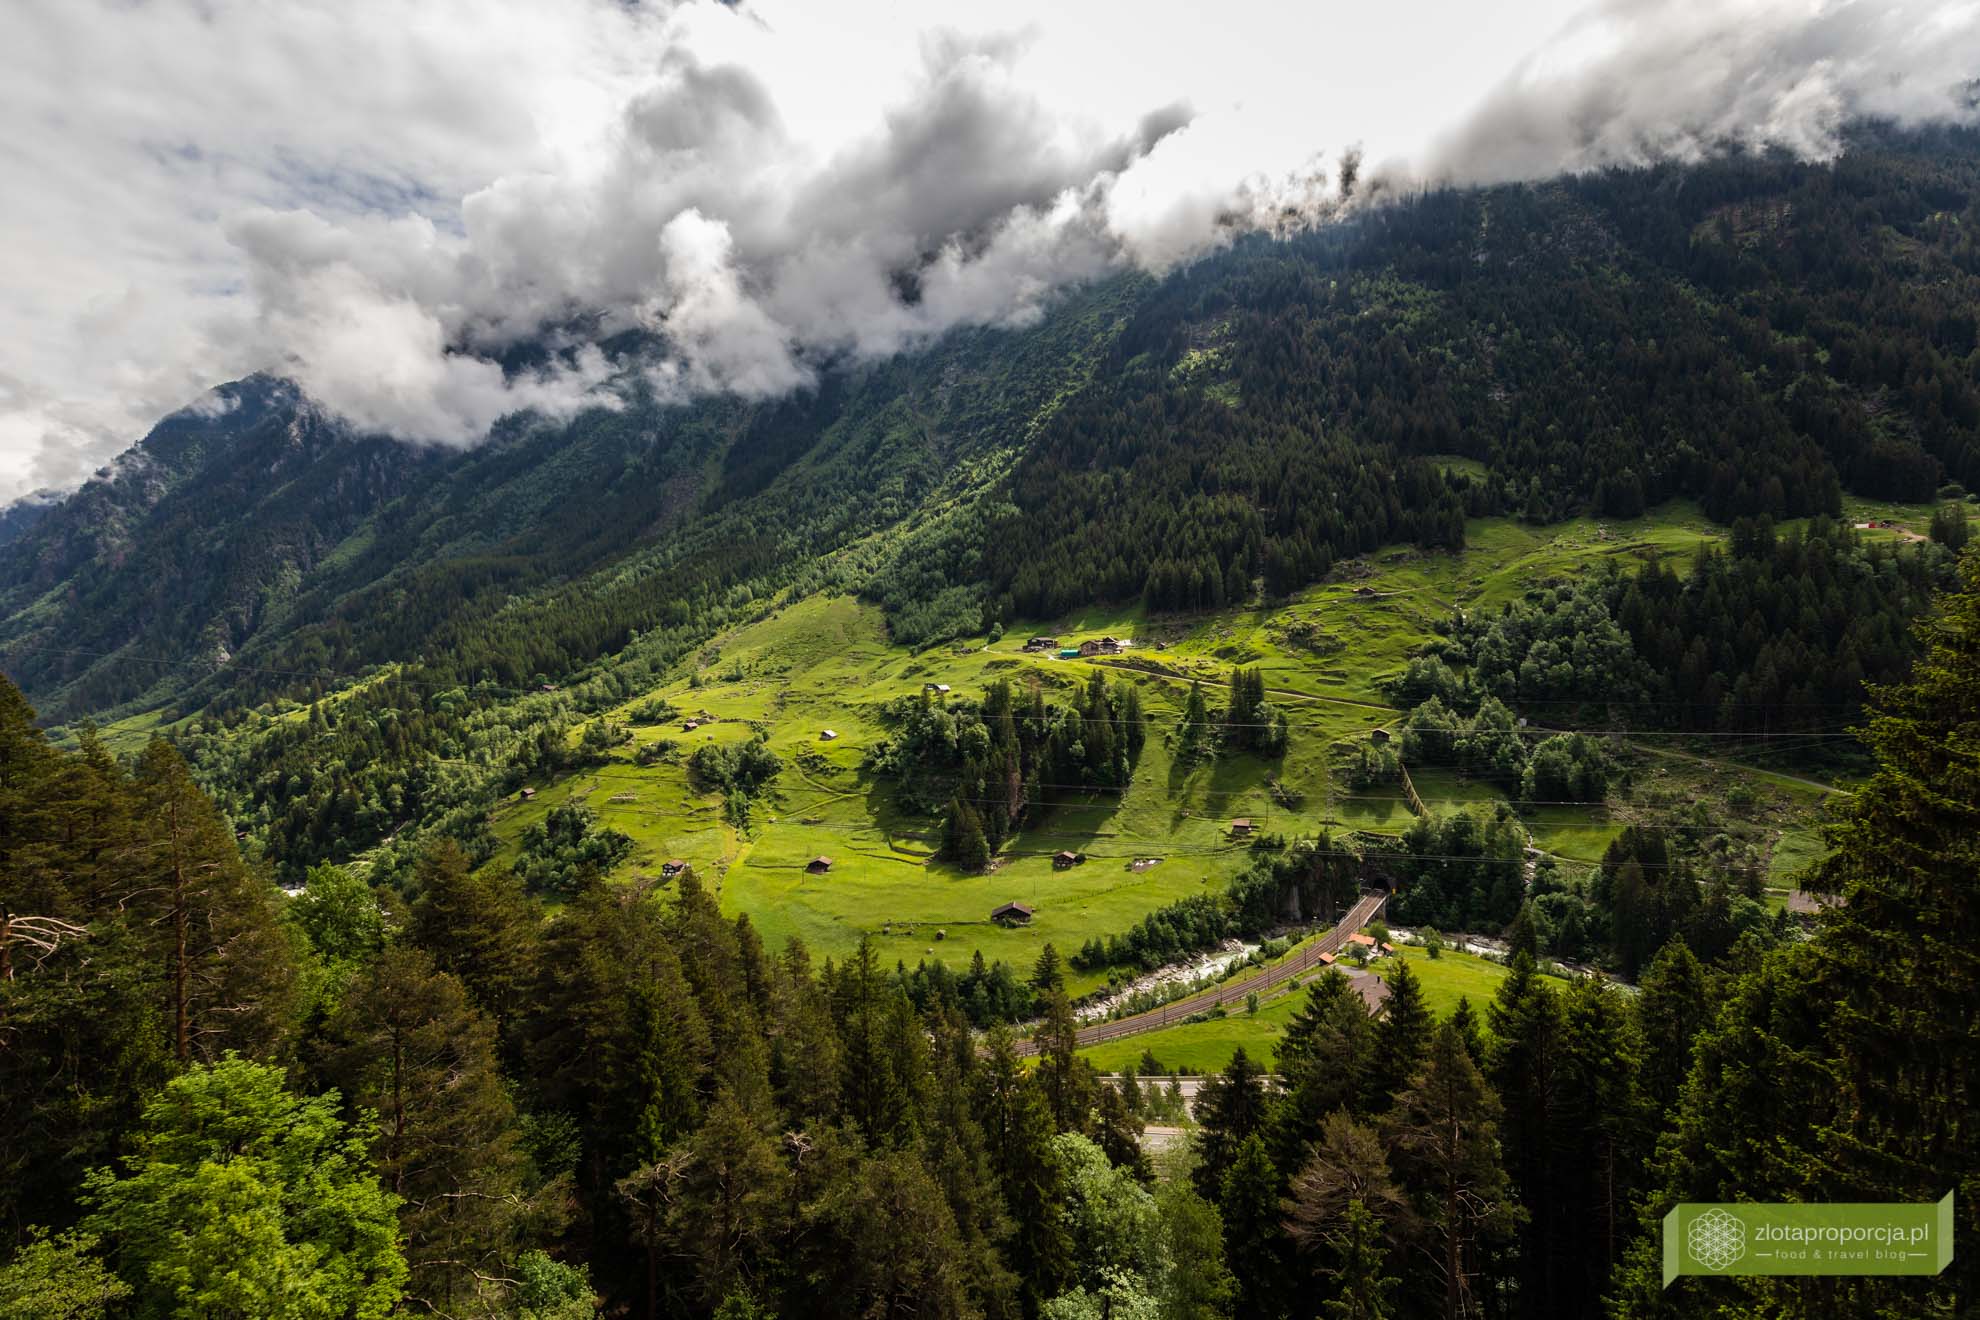 Ekspres Panoramiczny Gotarda; Szwajcaria; Szwajcaria pociągami; pociąg panoramiczny Szwajcaria; Gothard Panorama express; pociąg panoramiczny; Grand Train Tour of Switzerland; najpiękniejsze trasy kolejowe w Szwajcarii;